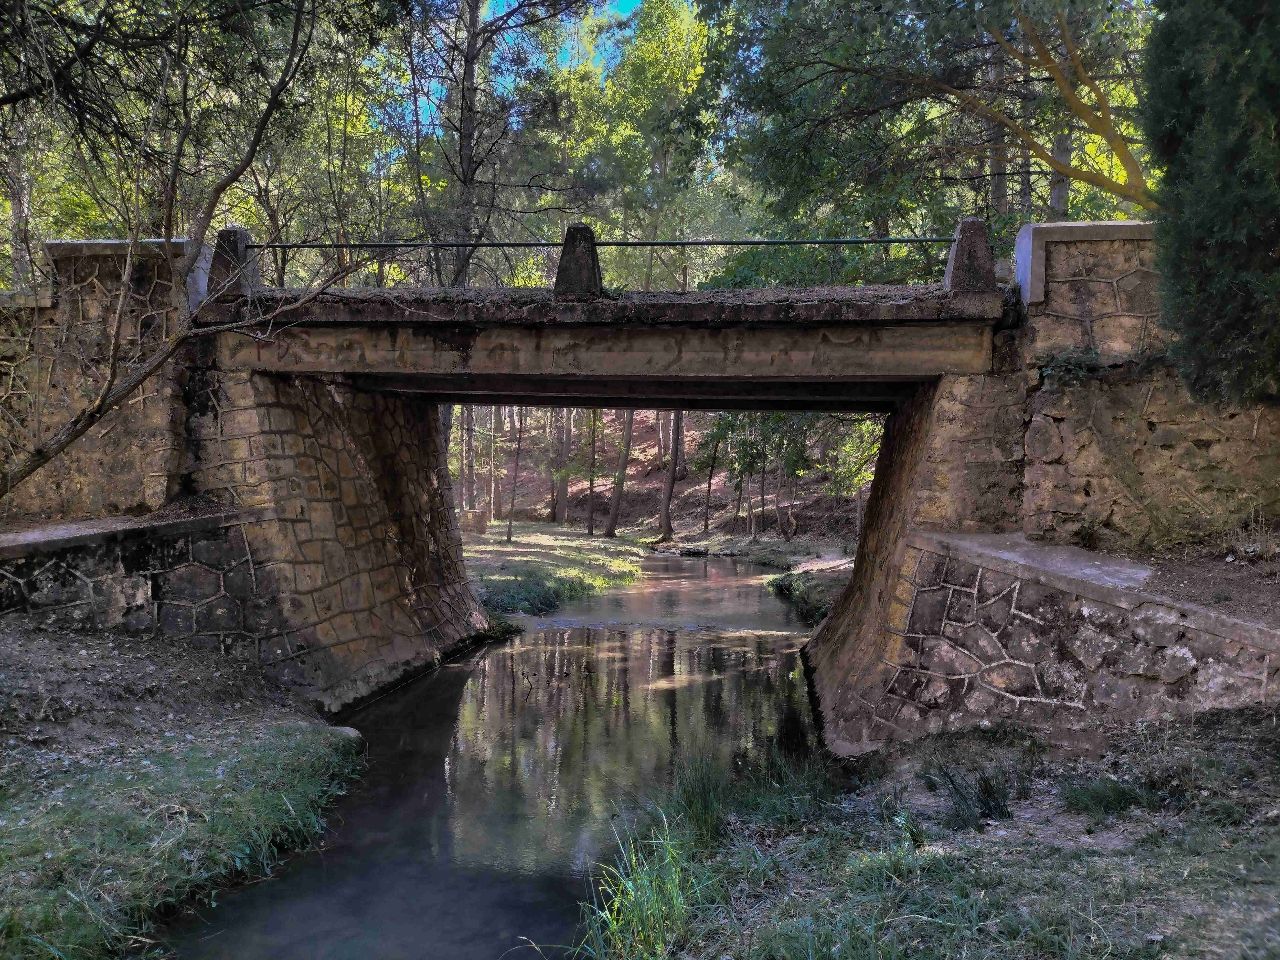 Puente de las tablas - From Área recreativa, Spain